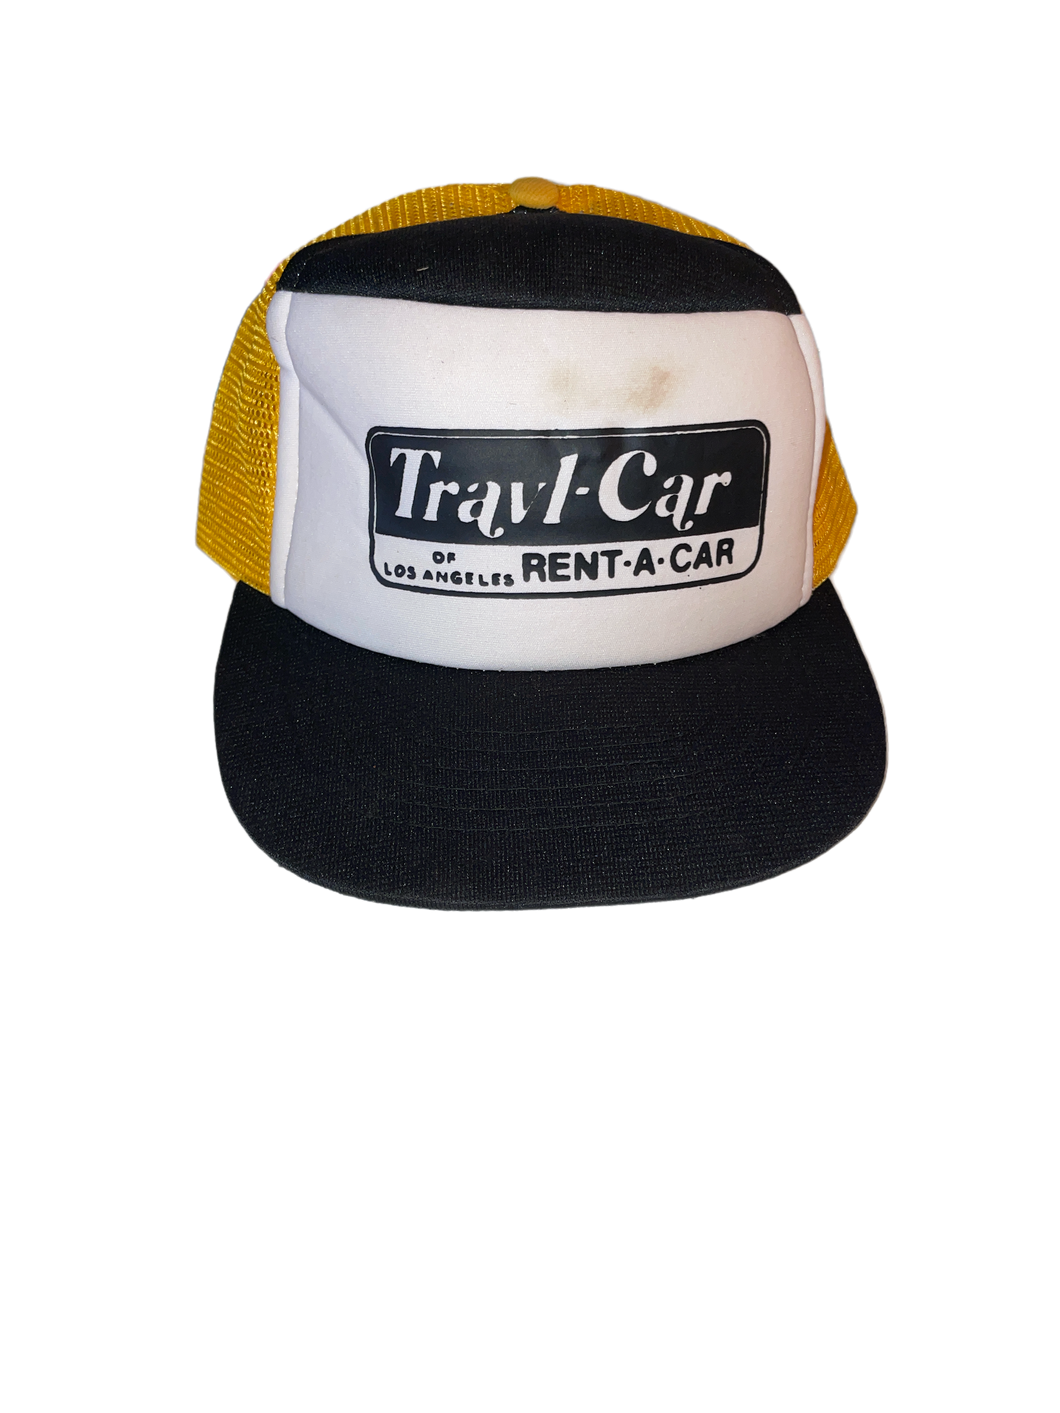 Travl-Car of Los Angeles Rent-A-Car Snapback Hat